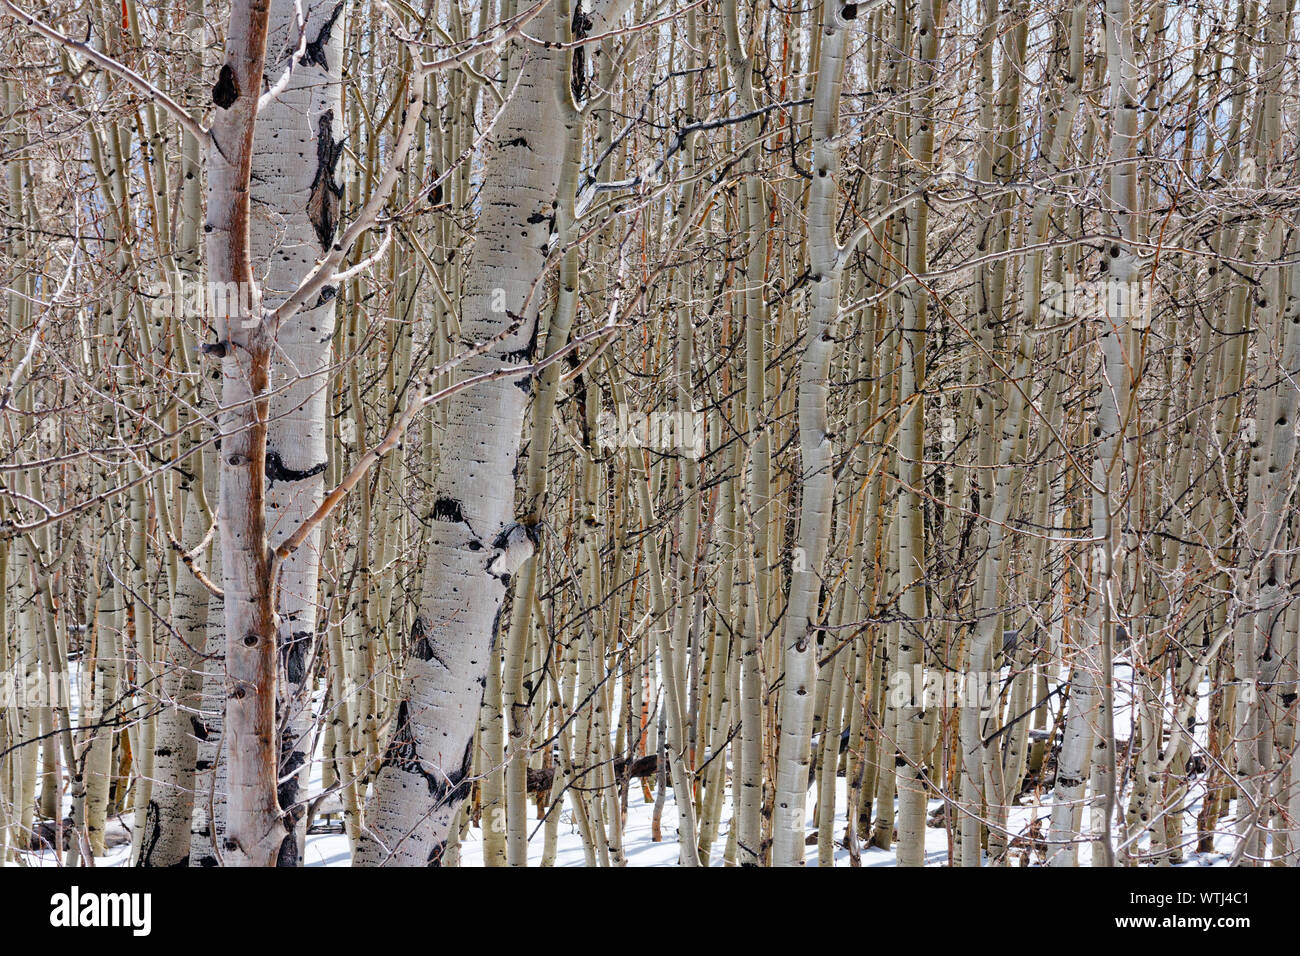 Winter Blick auf einen Wald mit unzähligen Birken (Betula Papyrifera). Bild kann dazu verwendet werden, die sagen: "Um zu veranschaulichen, kann den Wald vor lauter Bäumen" nicht sehen. Stockfoto